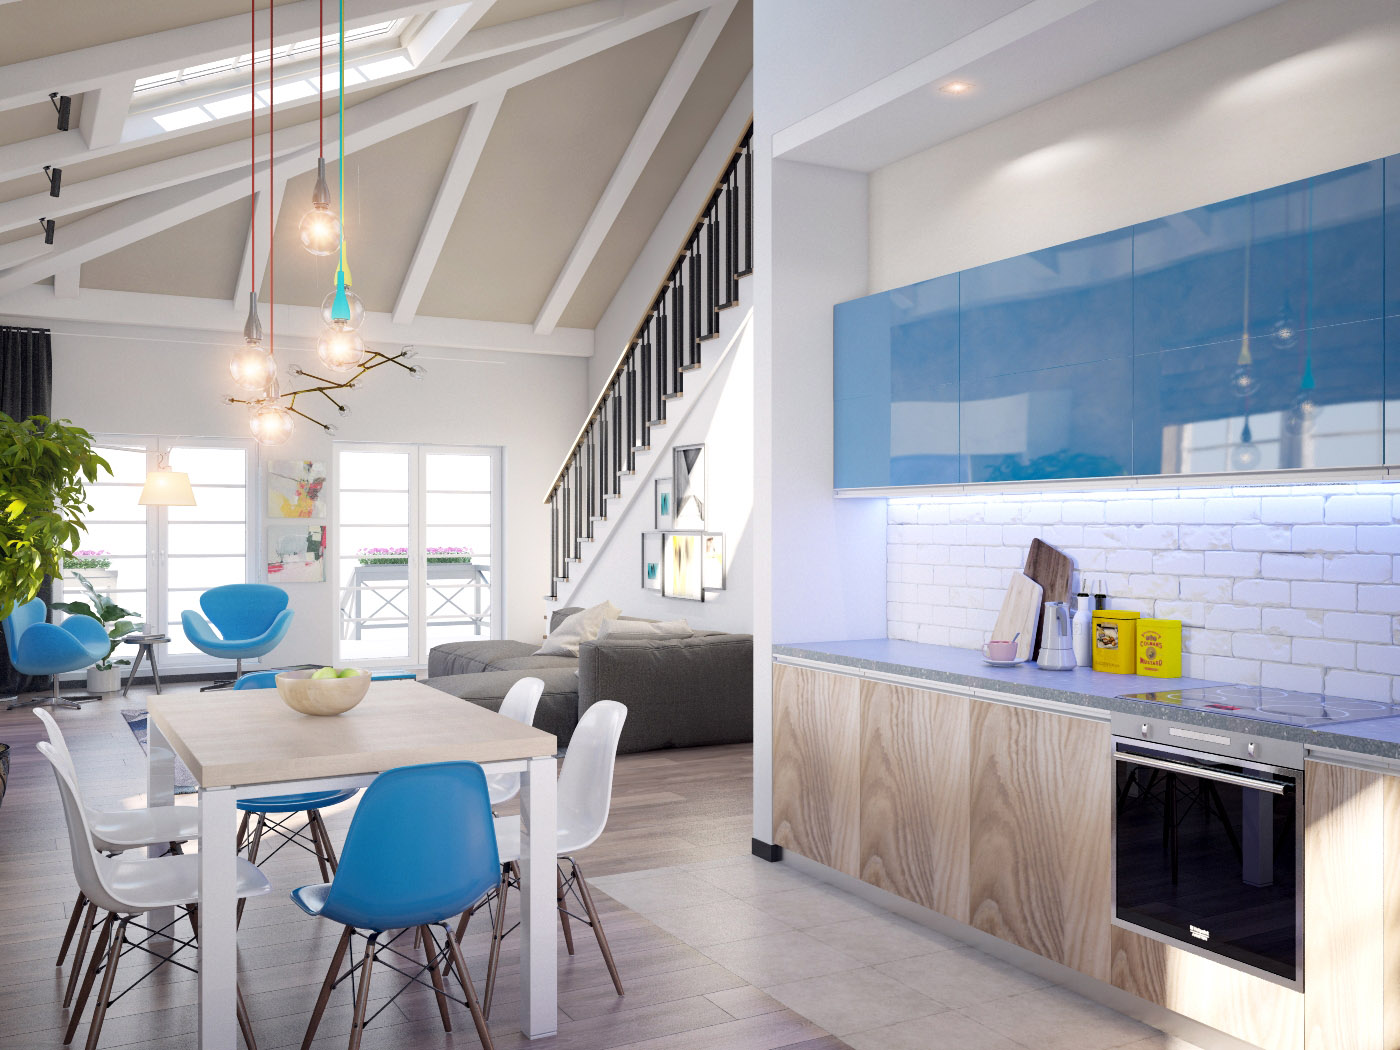 фото соременного интерьера дома с двухсветным пространством вид со стороны кухни